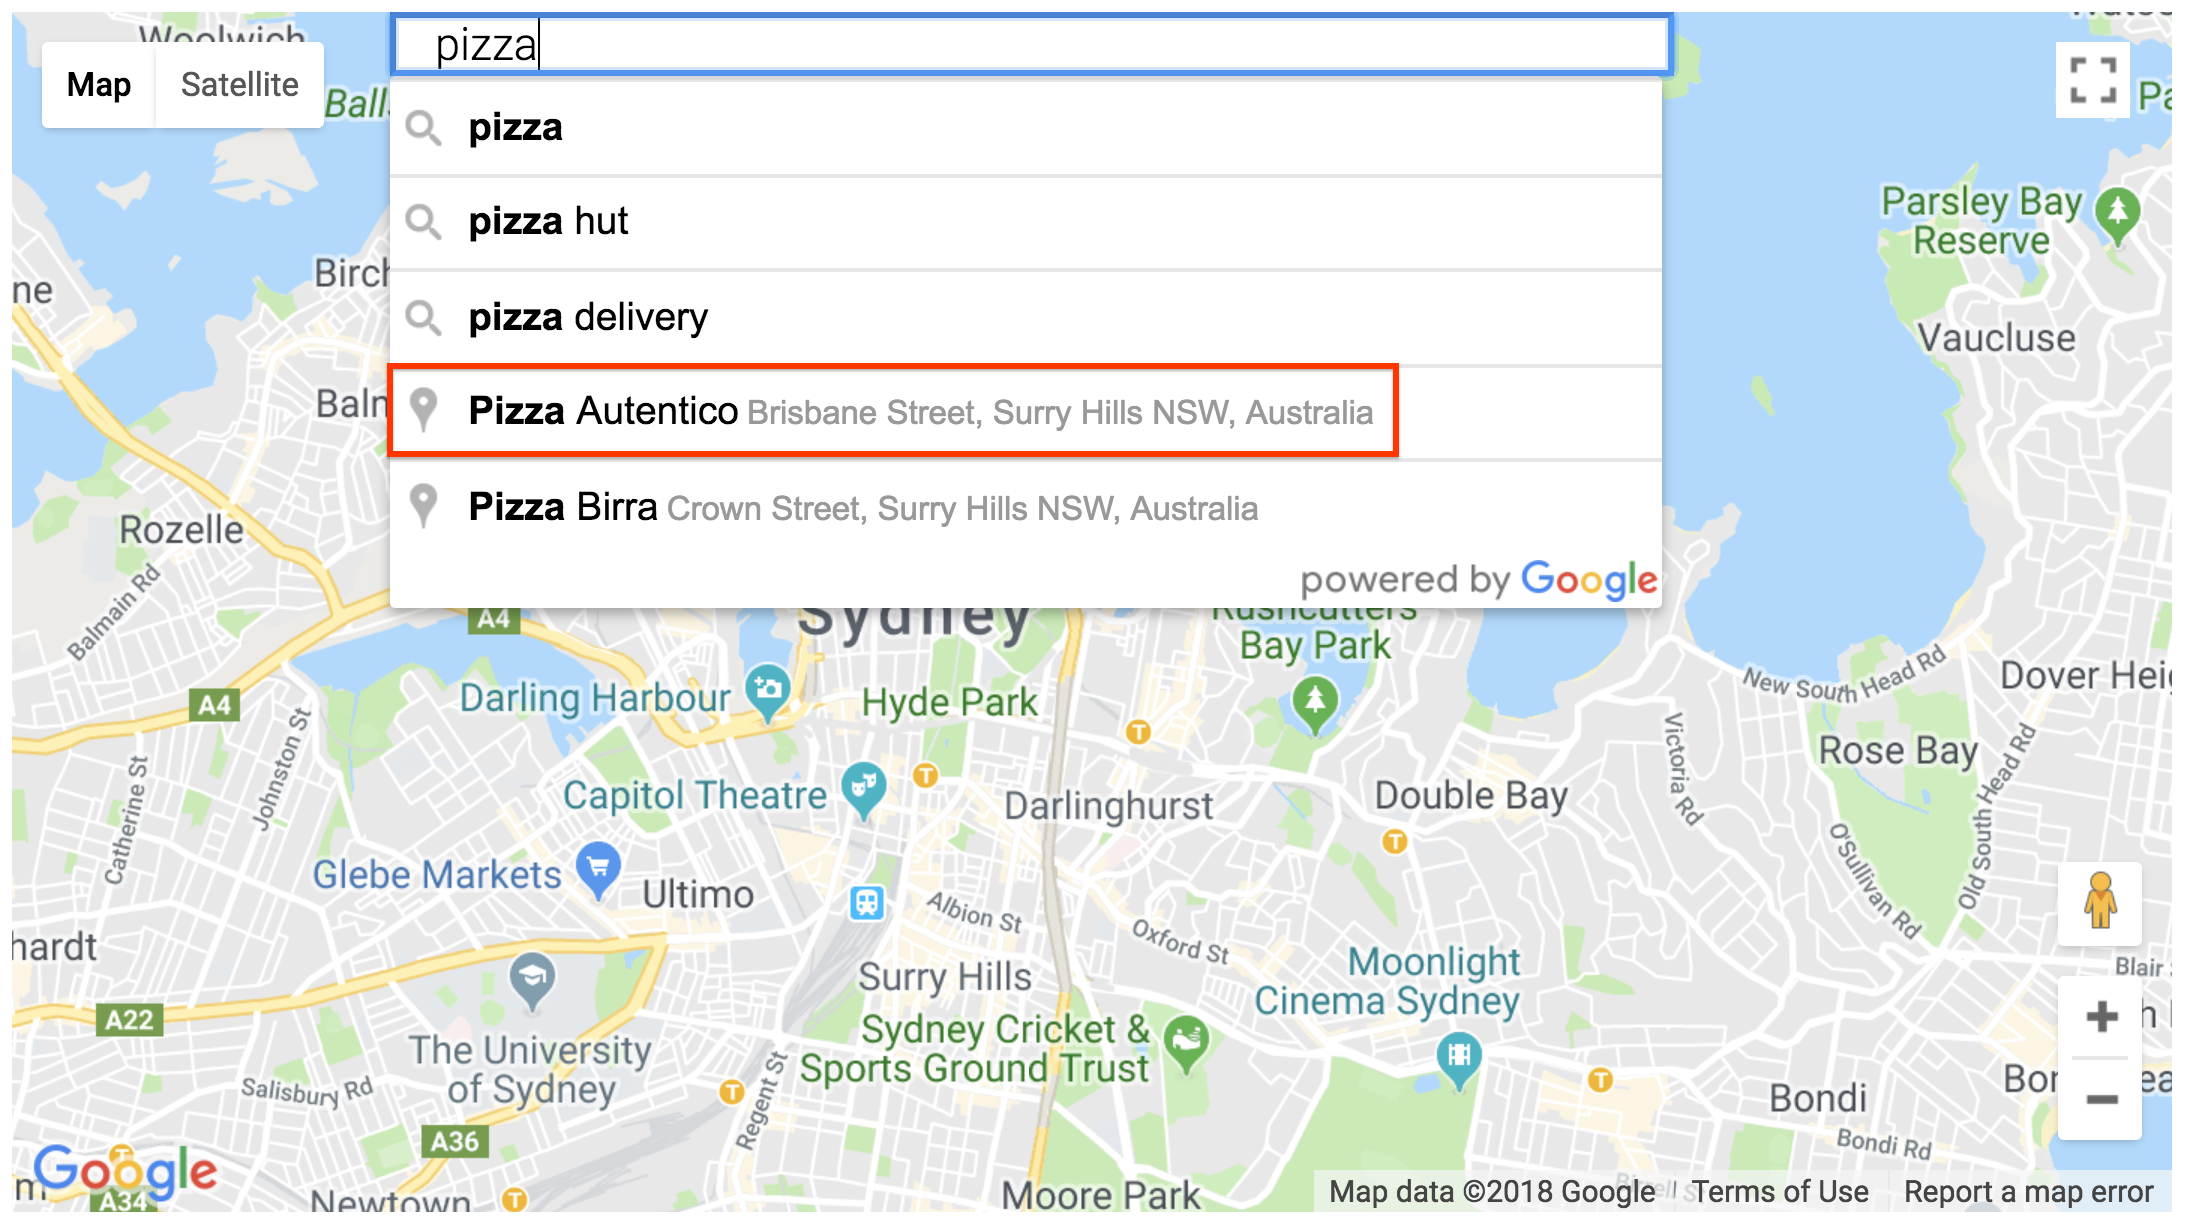 Wynik wyszukiwania miejsc w widżecie pola wyszukiwania szczegółów miejsca